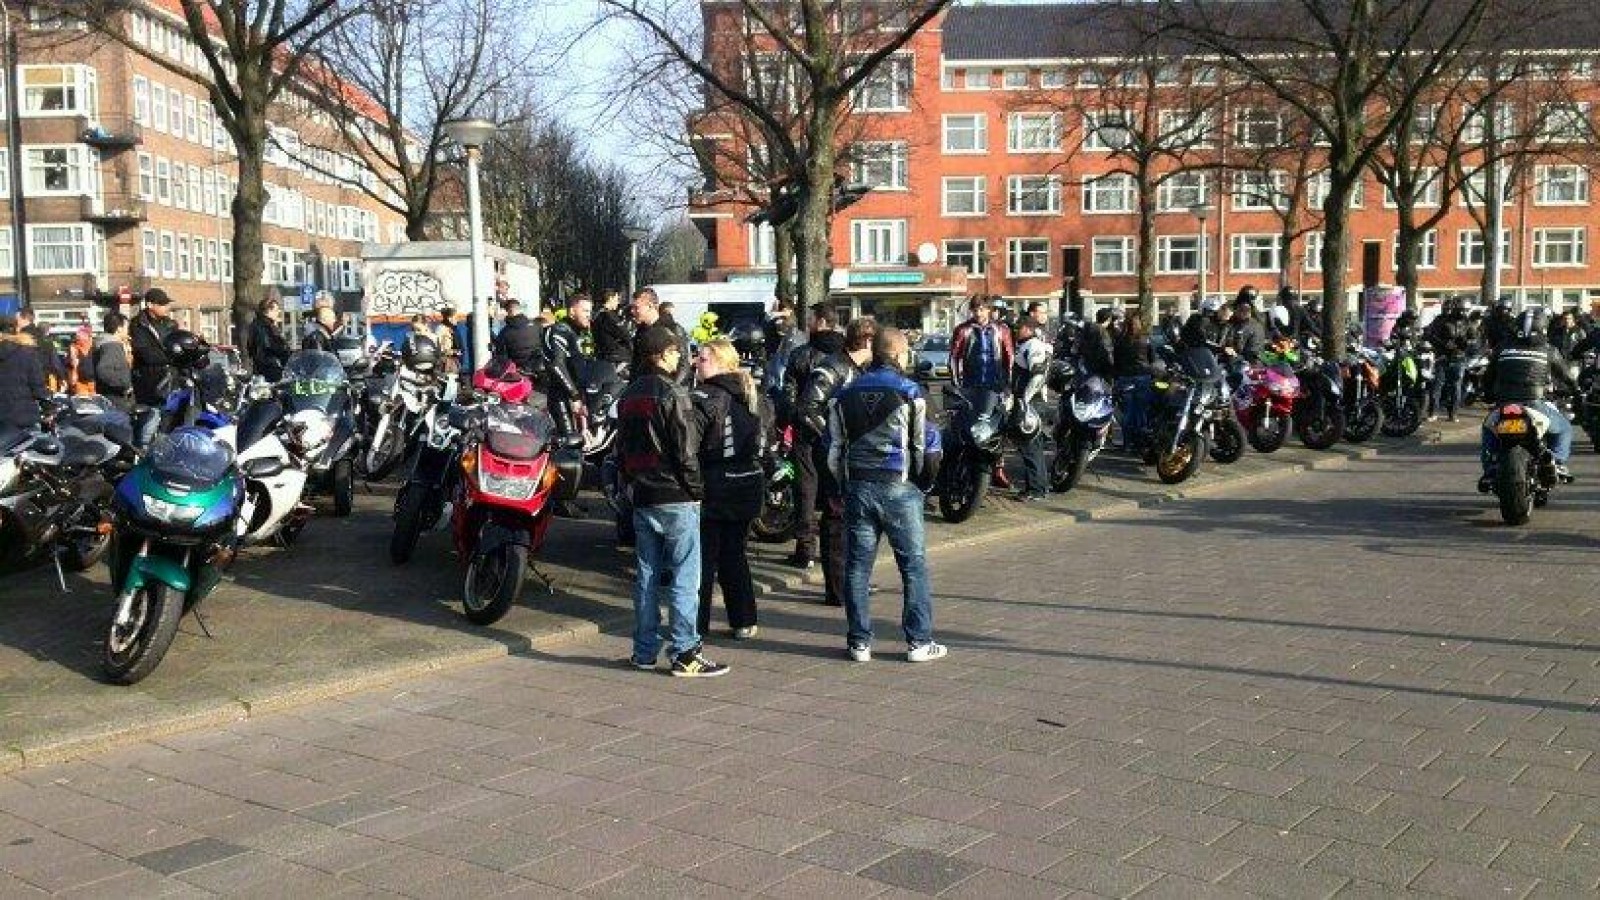 Video: Herdenking omgekomen motorrijder in Piet Heintunnel